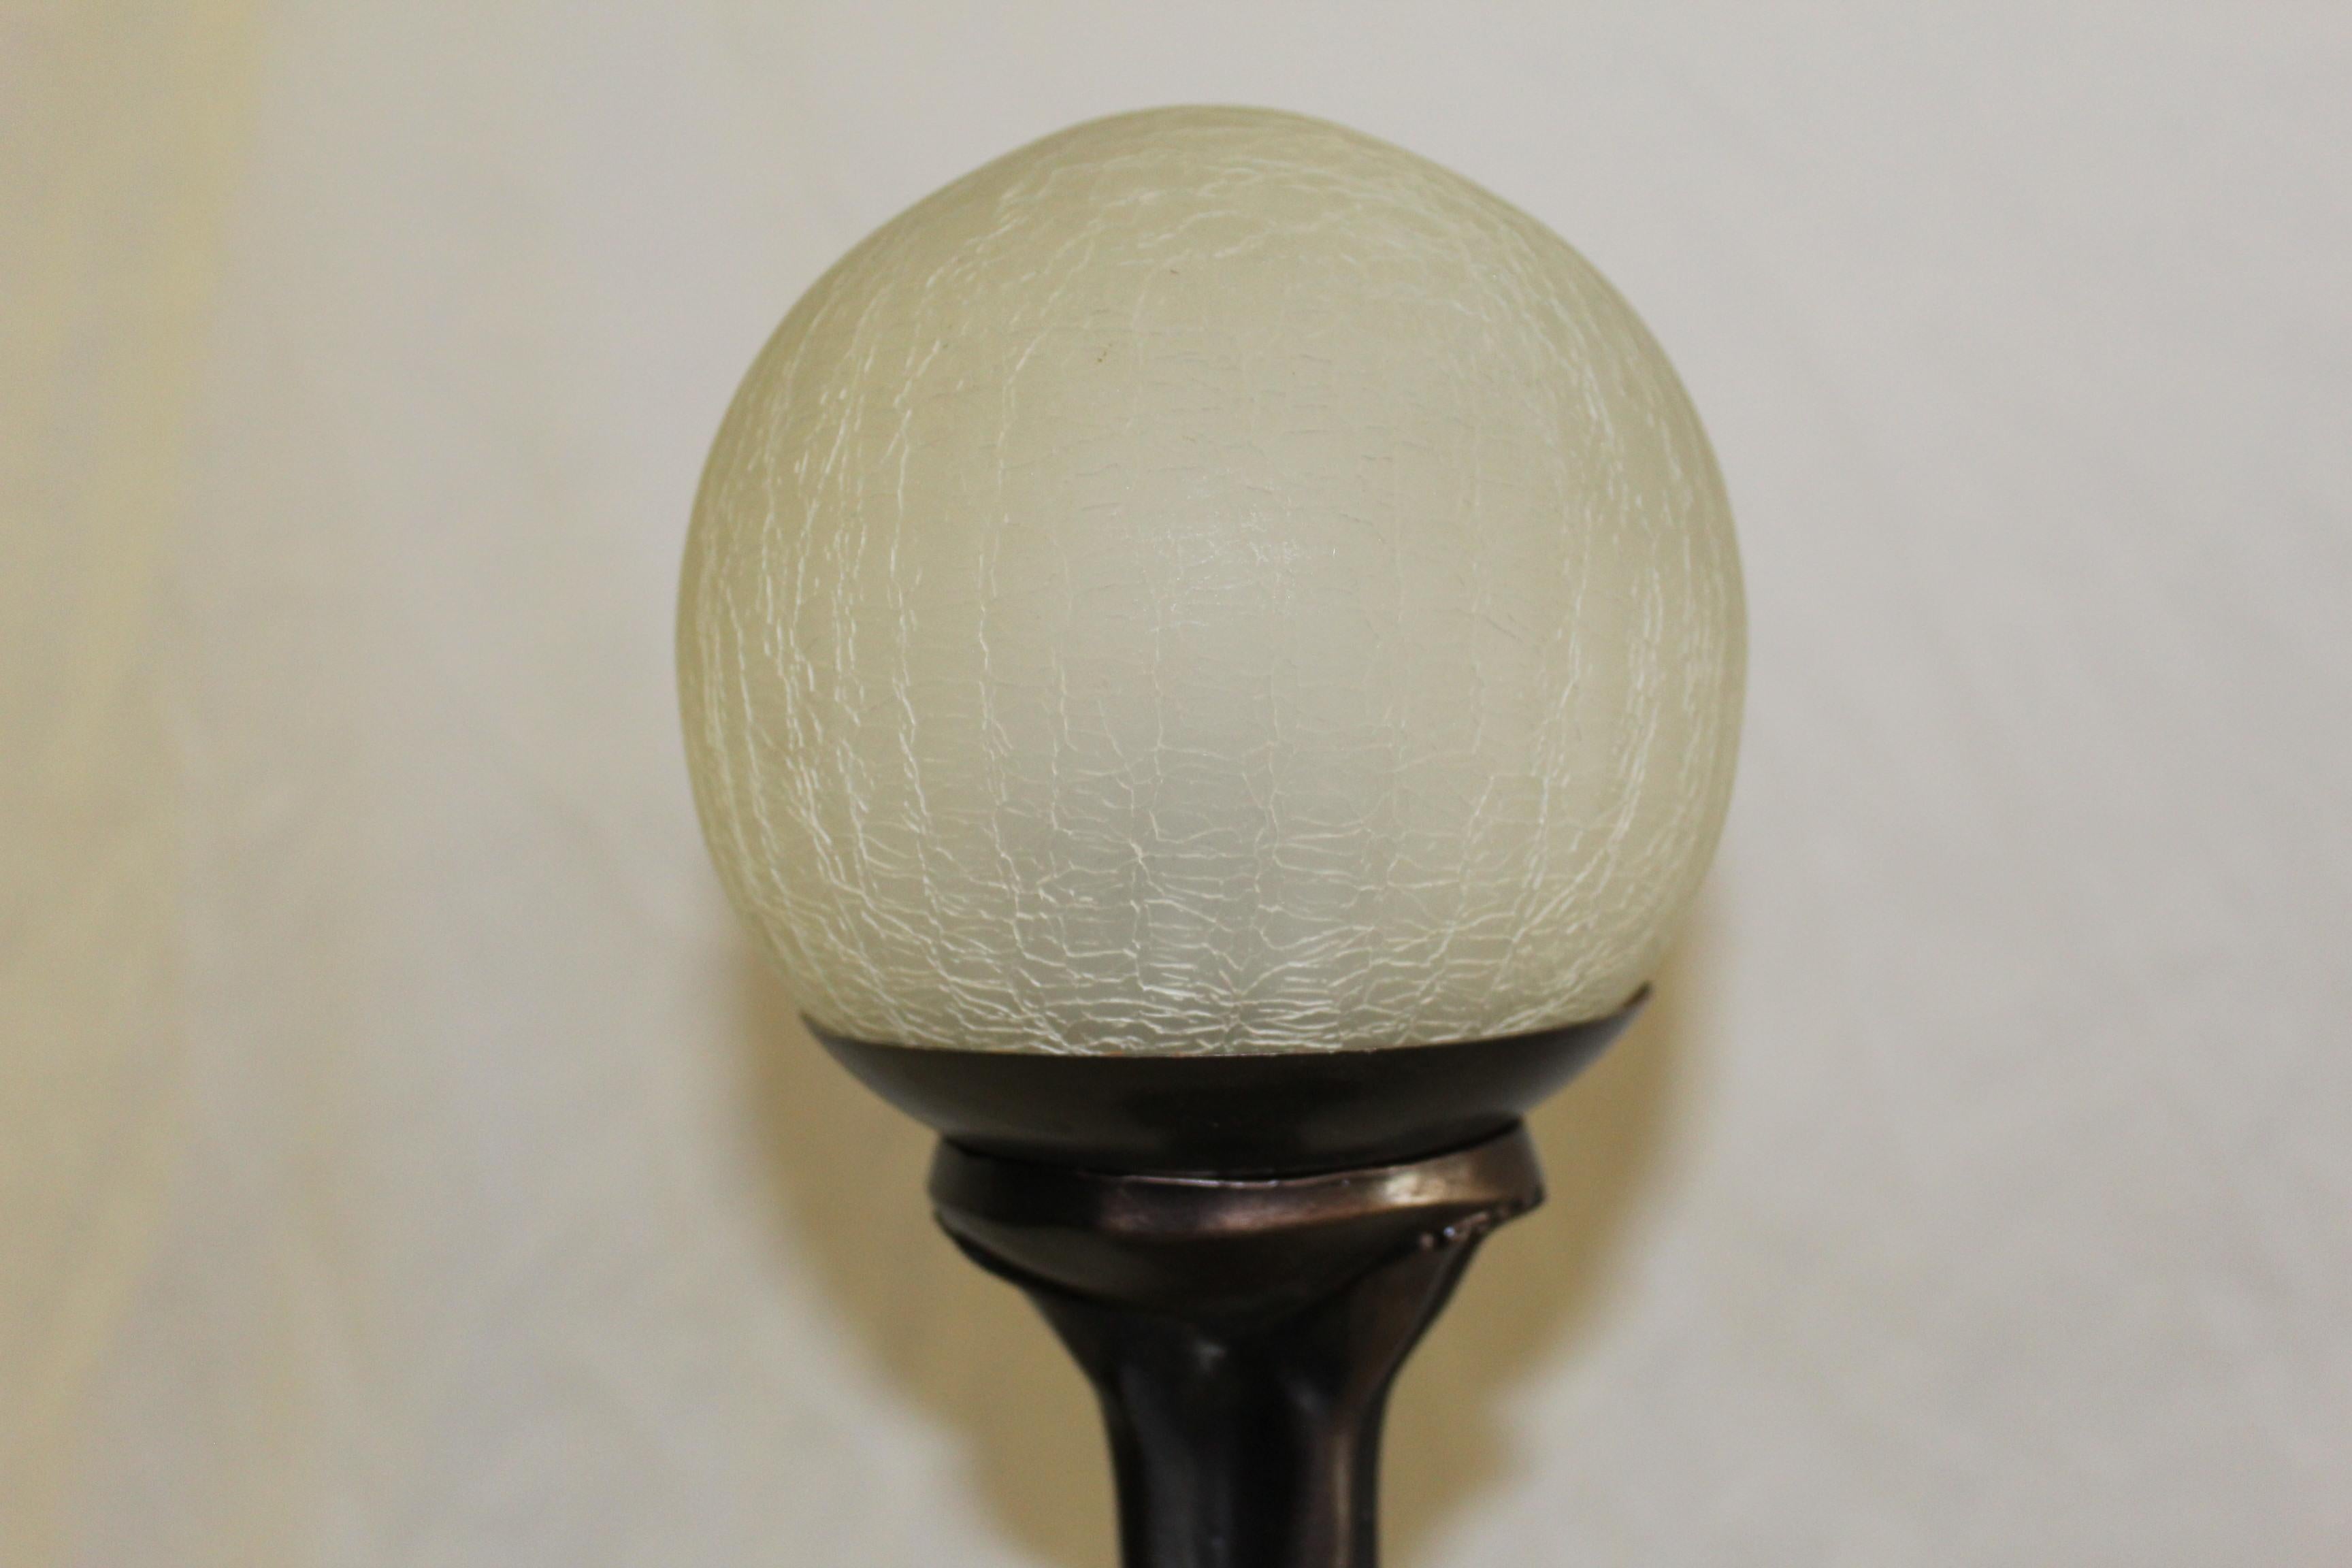 Lampe de style Art Déco coulée en Angleterre avec finition en bronze. Globe en verre et ampoule de type candélabre. Ça a l'air bien éclairé. Mesures : Moulage lourd à 17 1/2